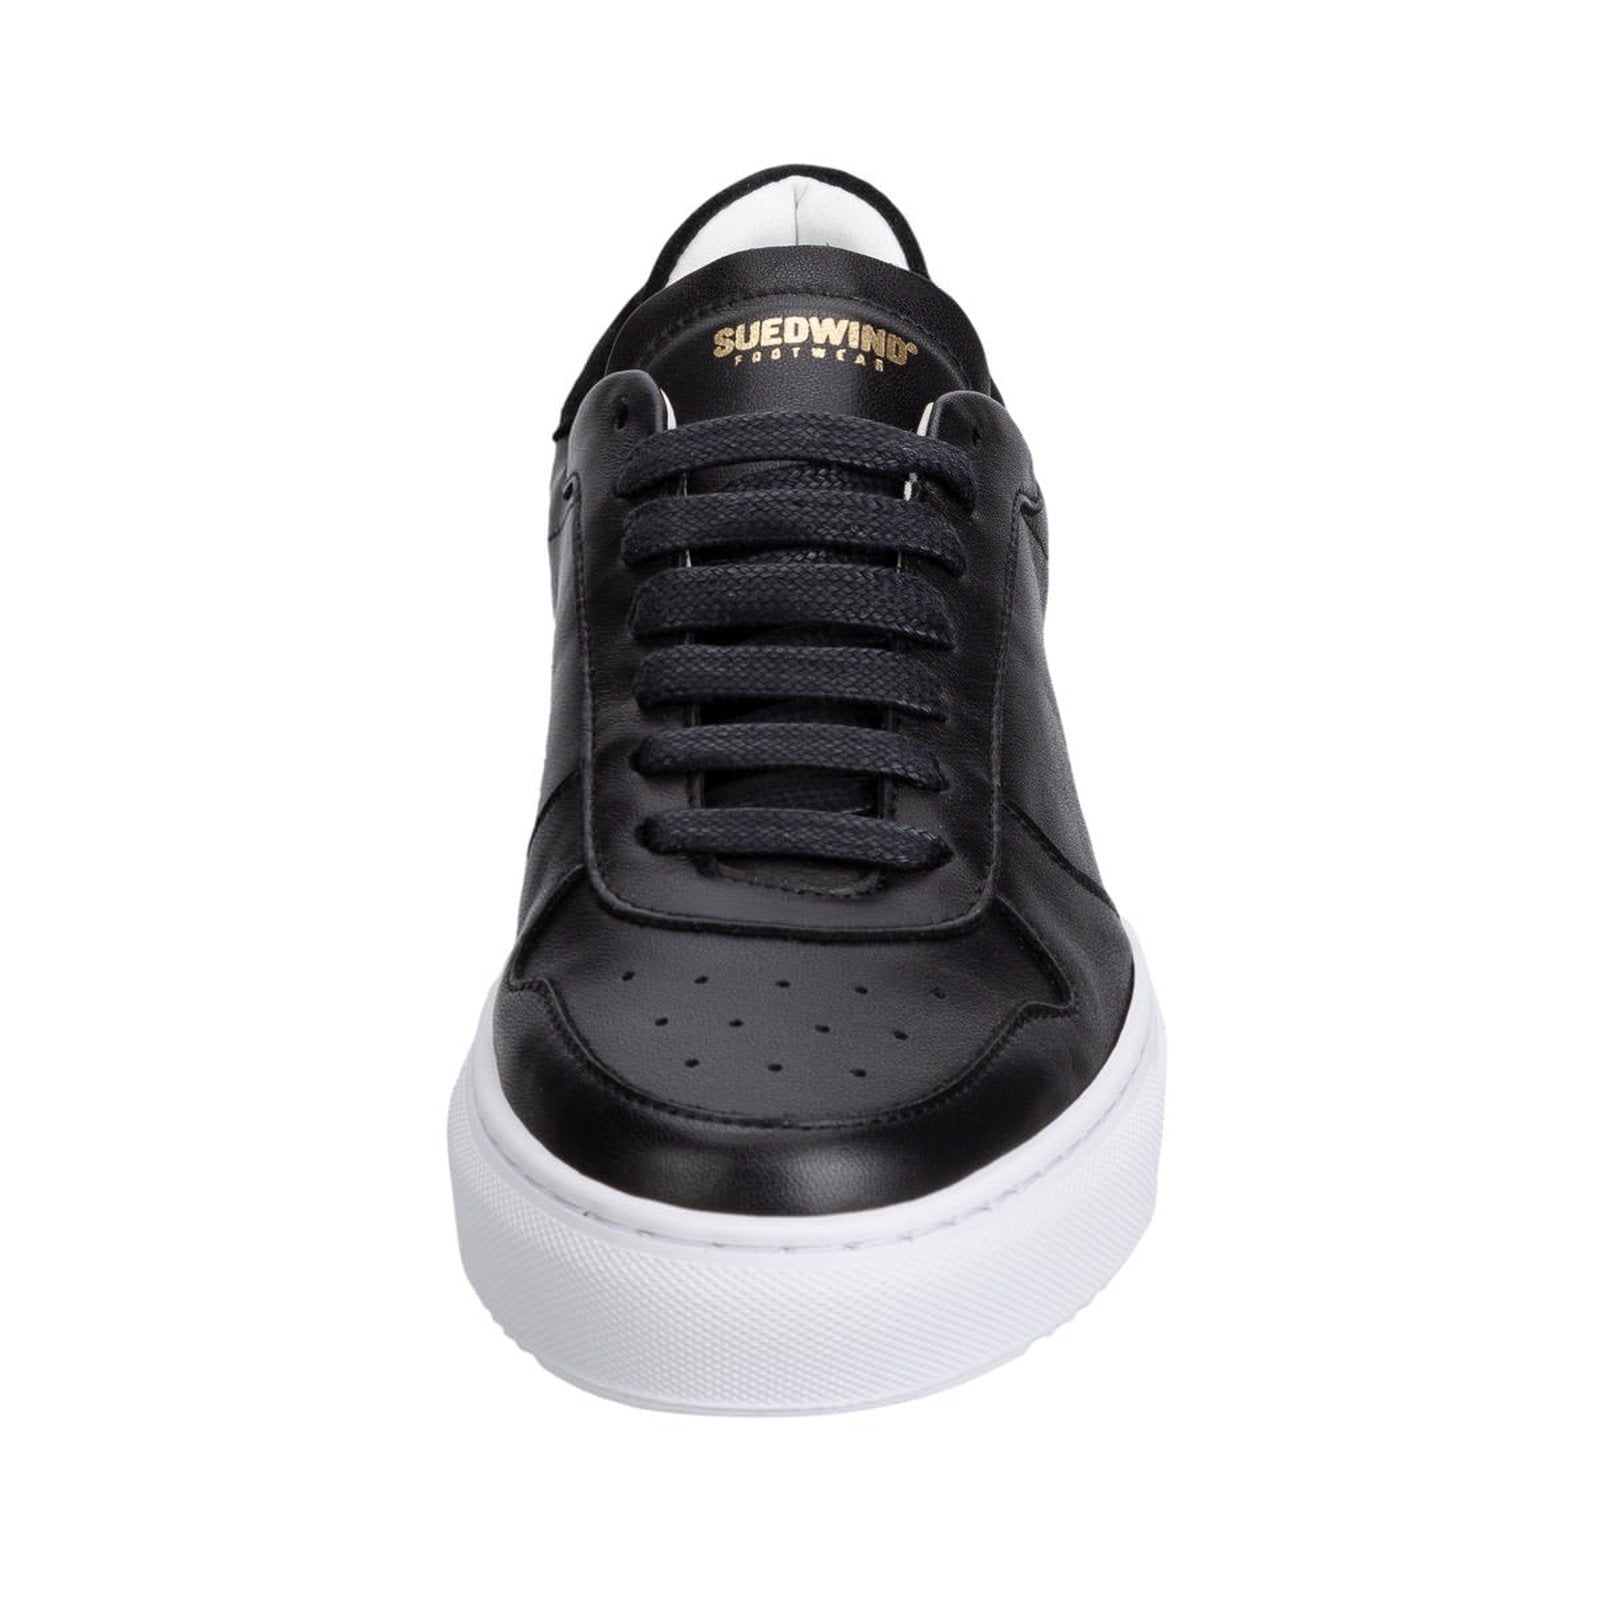 Suedwind "Copenhagen leather" eleganter & chicker Sneaker aus Leder - in schwarz, weiß, stonegrey - Gr.36-45 Suedwind bei SP-Reitsport